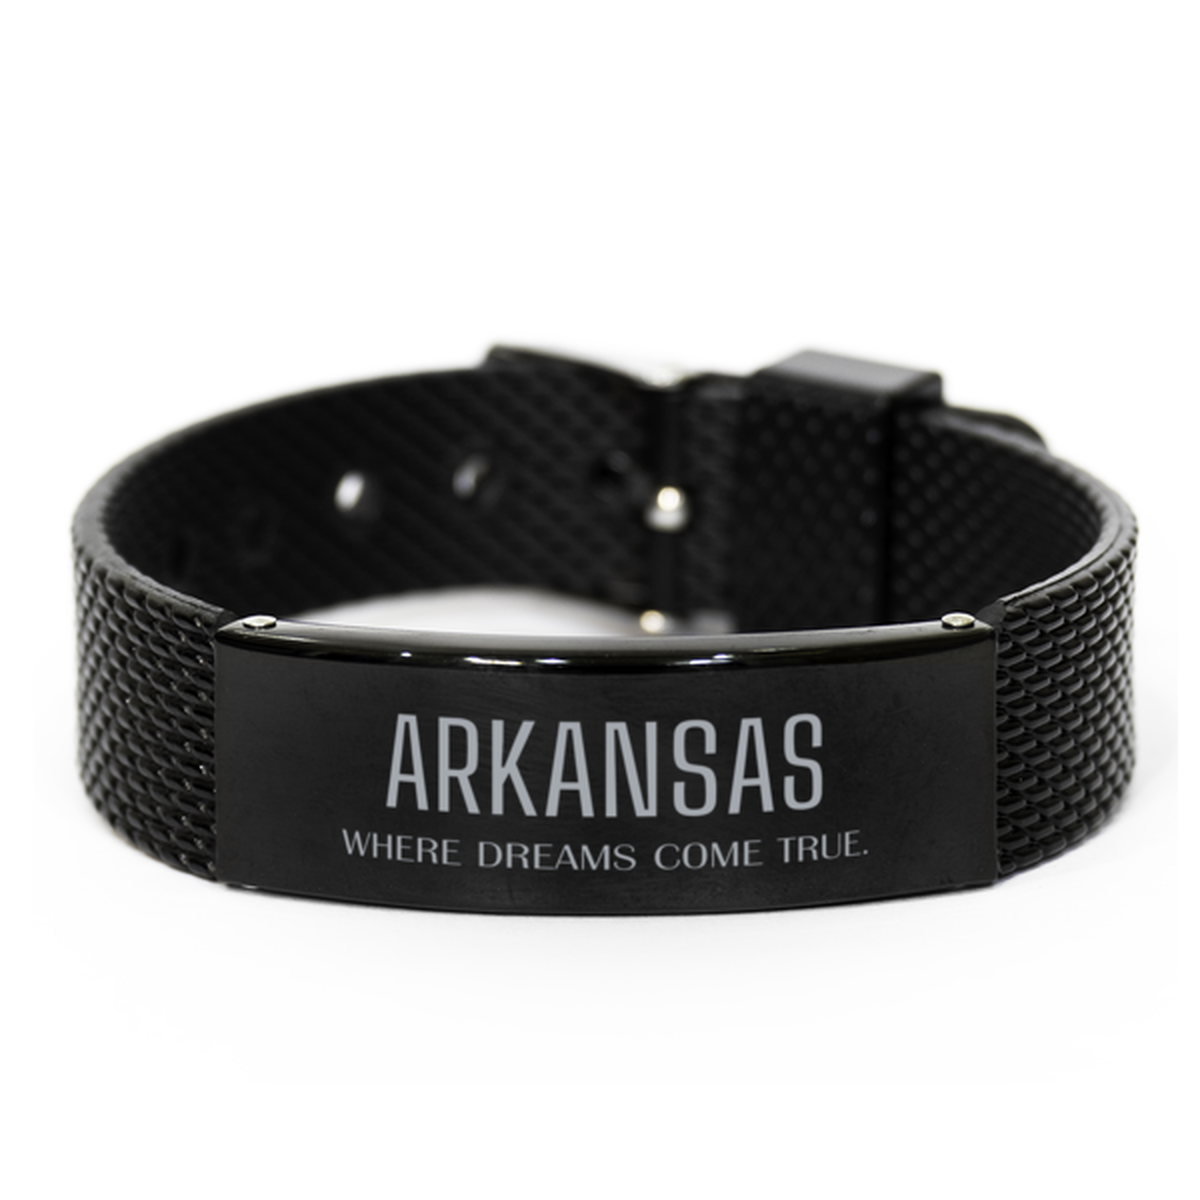 Love Arkansas State Black Shark Mesh Bracelet, Arkansas Where dreams come true, Birthday Inspirational Gifts For Arkansas Men, Women, Friends